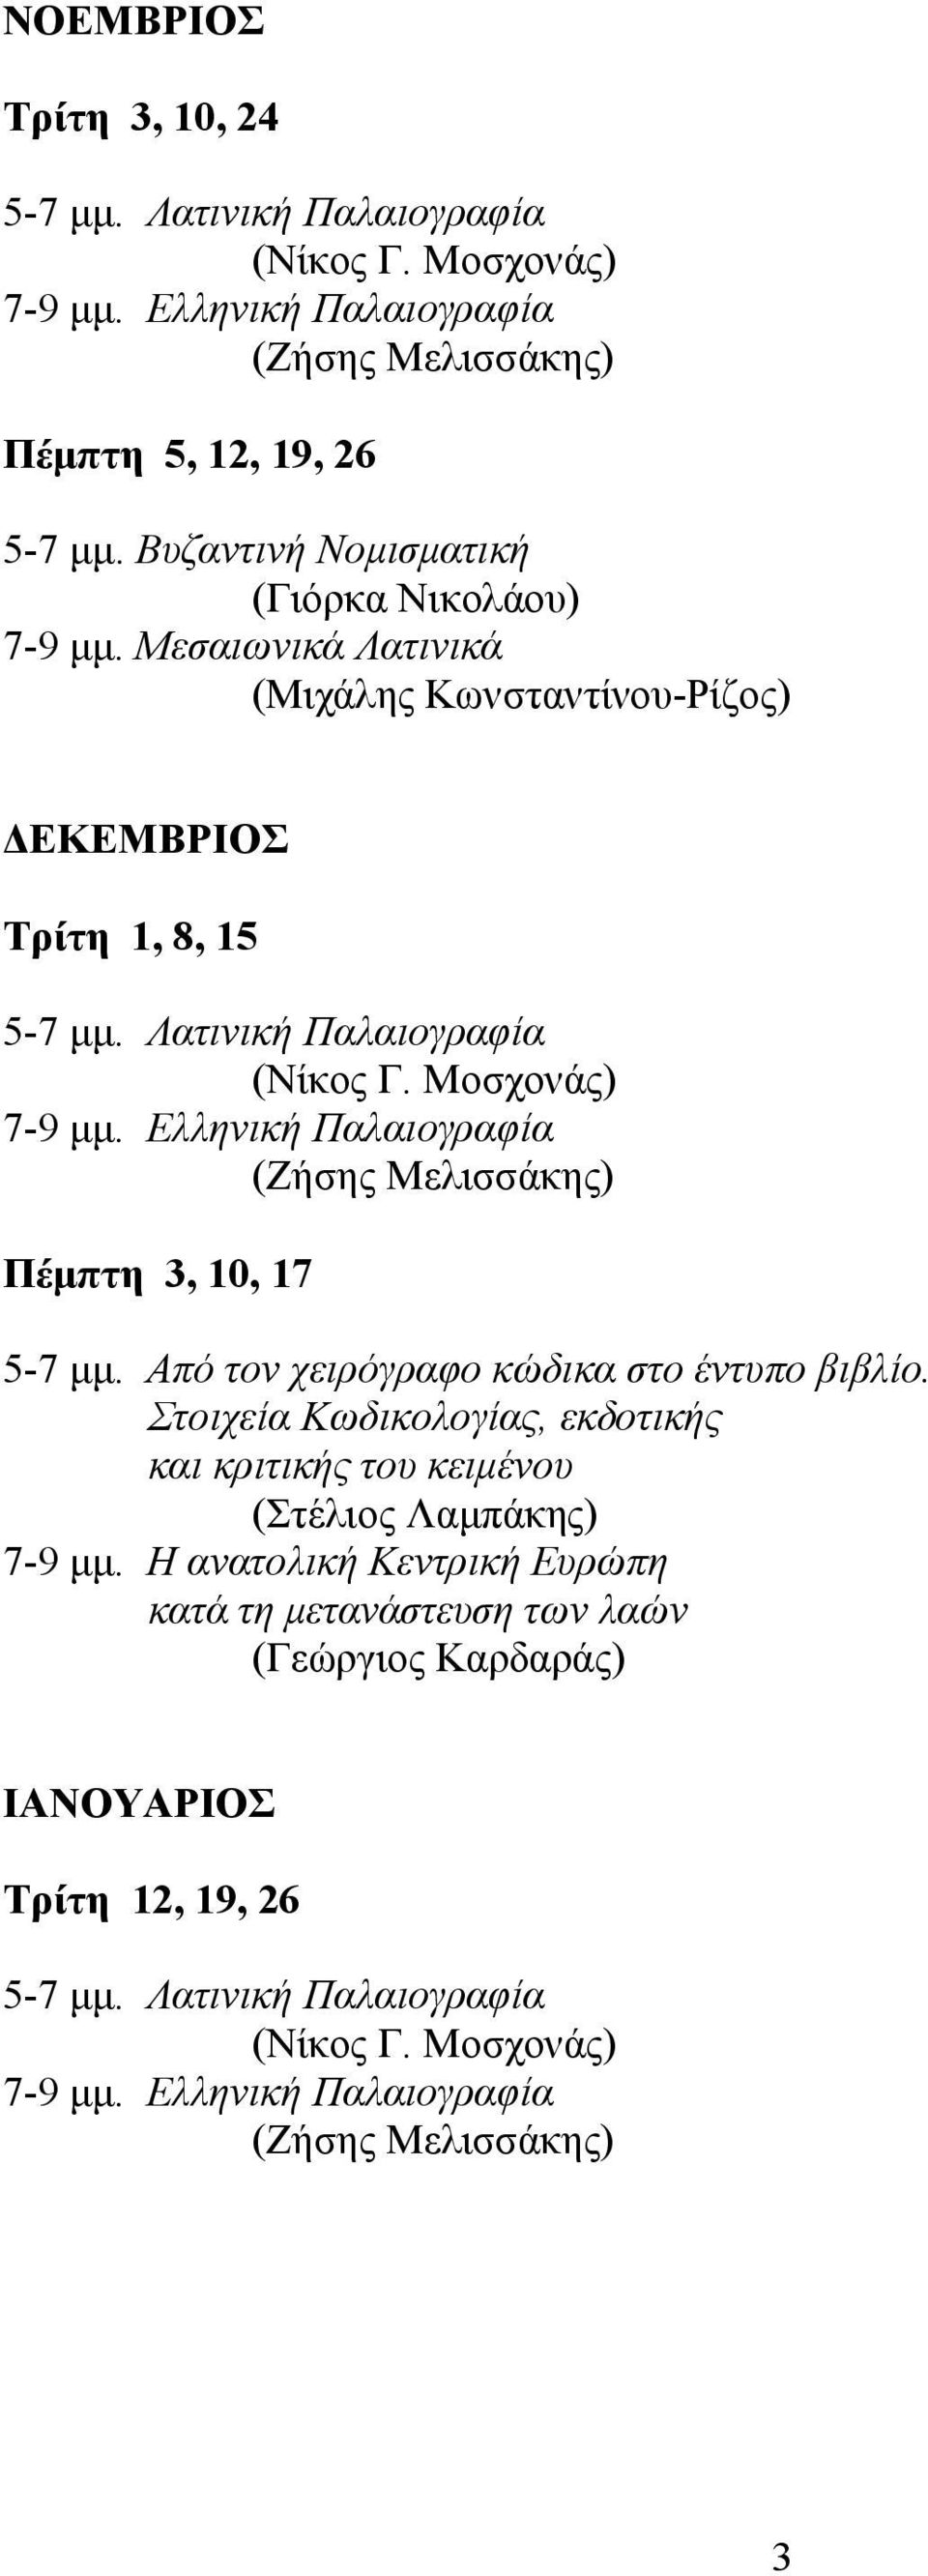 Ελληνική Παλαιογραφία (Ζήσης Μελισσάκης) Πέμπτη 3, 10, 17 5-7 μμ. Από τον χειρόγραφο κώδικα στο έντυπο βιβλίο.